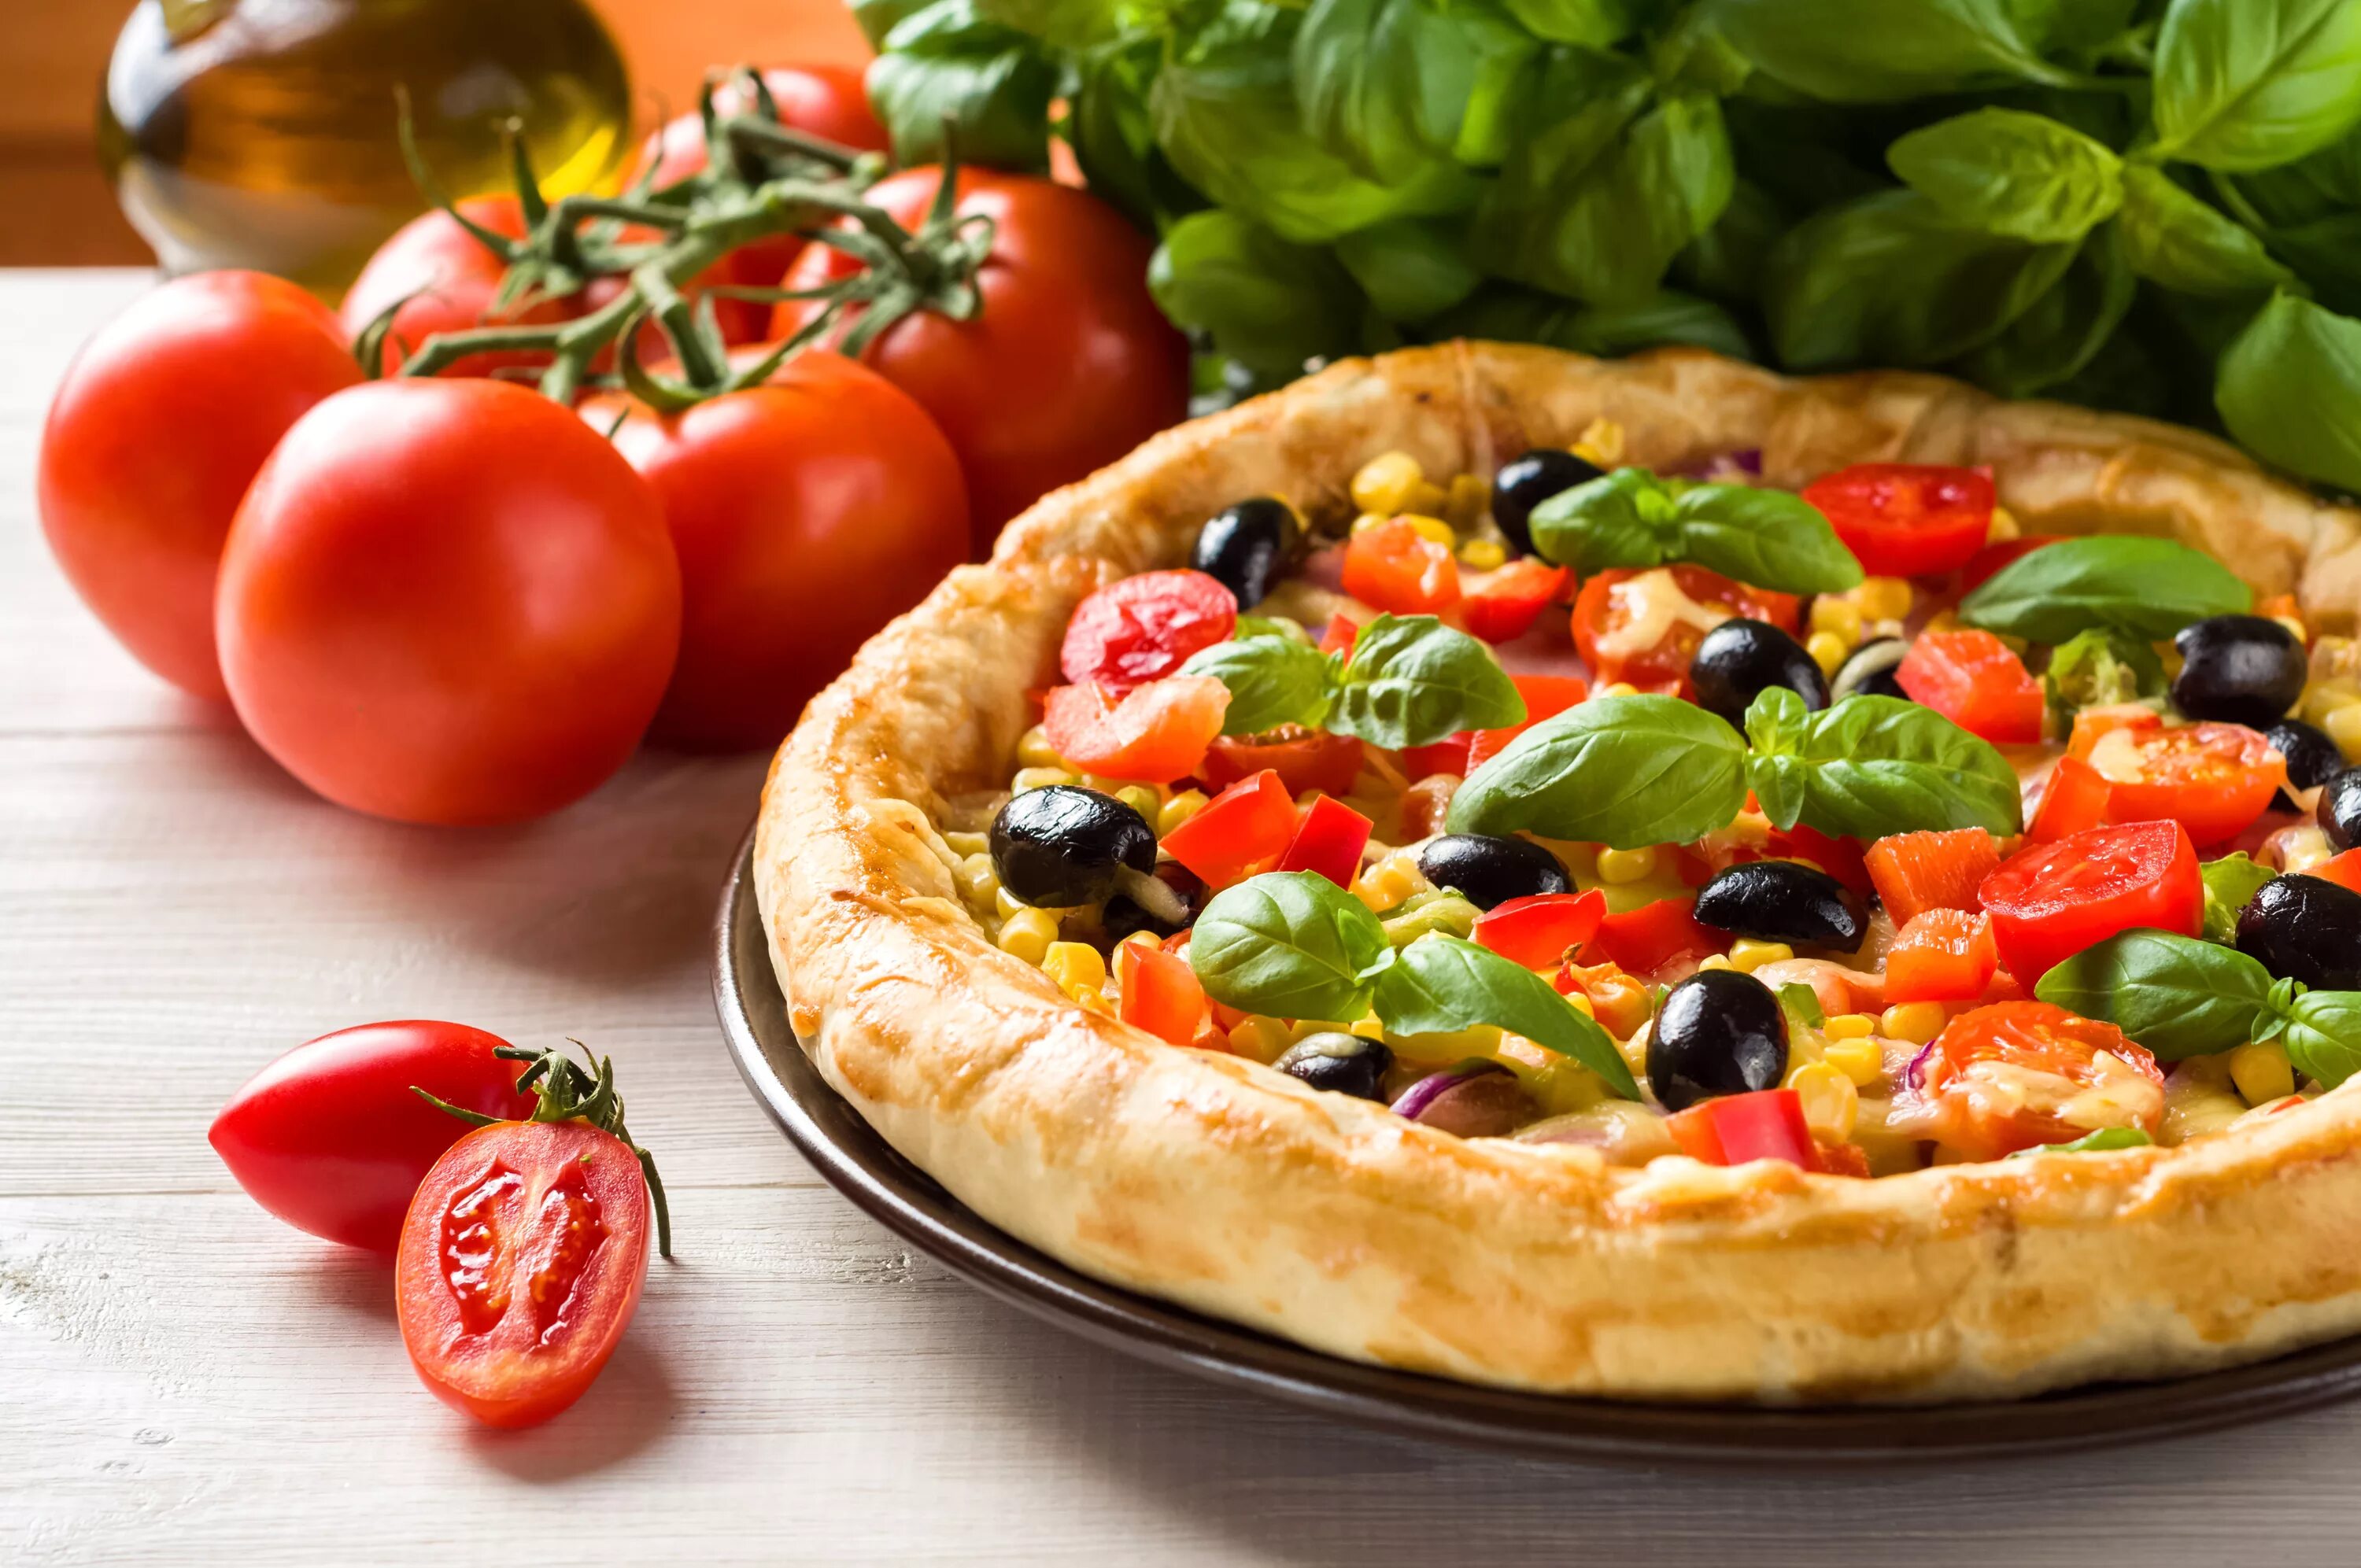 Картинки еды. Итальянская еда. "Пицца". Красивая пицца. Красивая итальянская пицца.